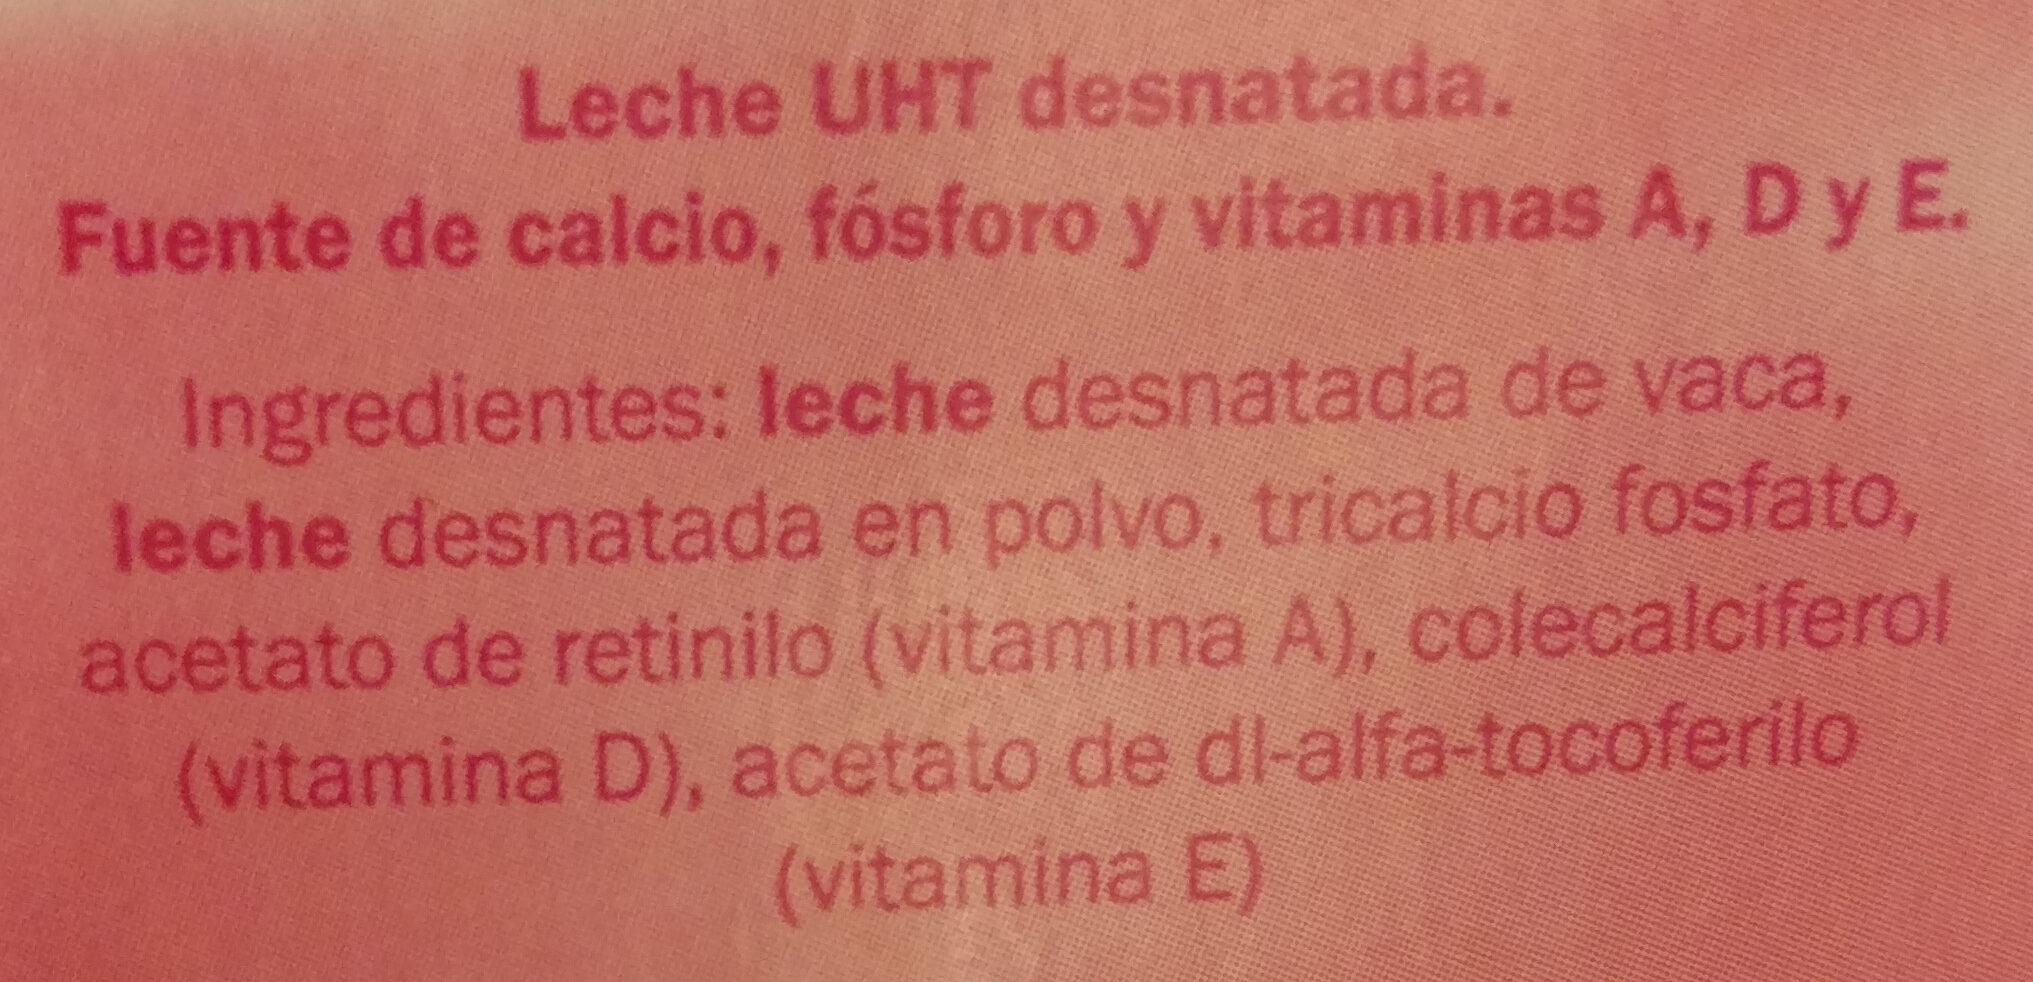 Leche UHT desnatada calcio - Ingredienti - es